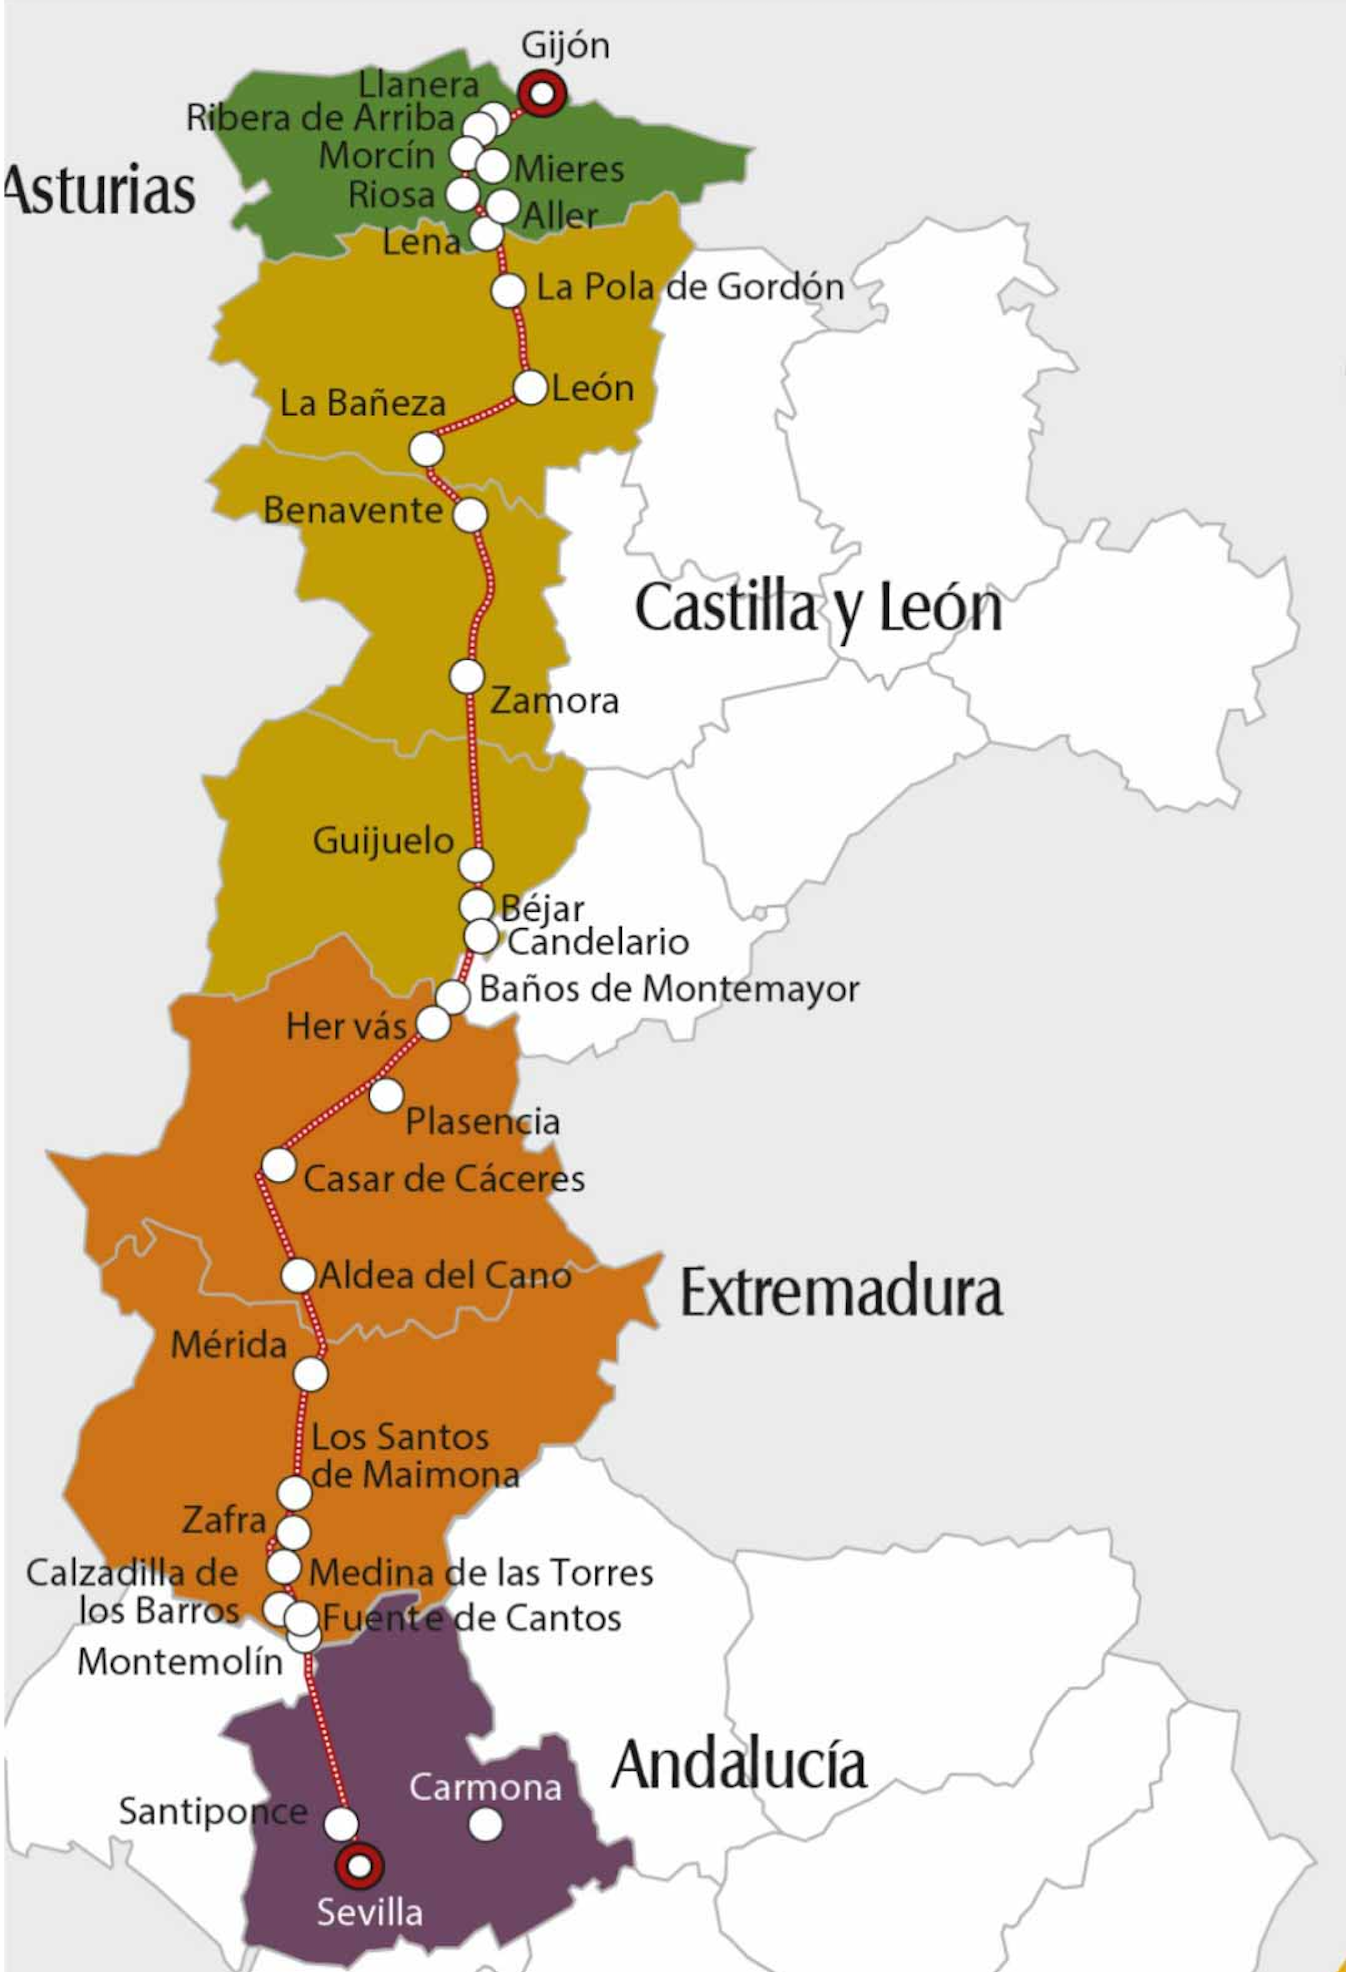 Ruta Via de la Plata, 1000 kilometer van Sevilla naar Gijón (bron: spainculturalroutes.com)